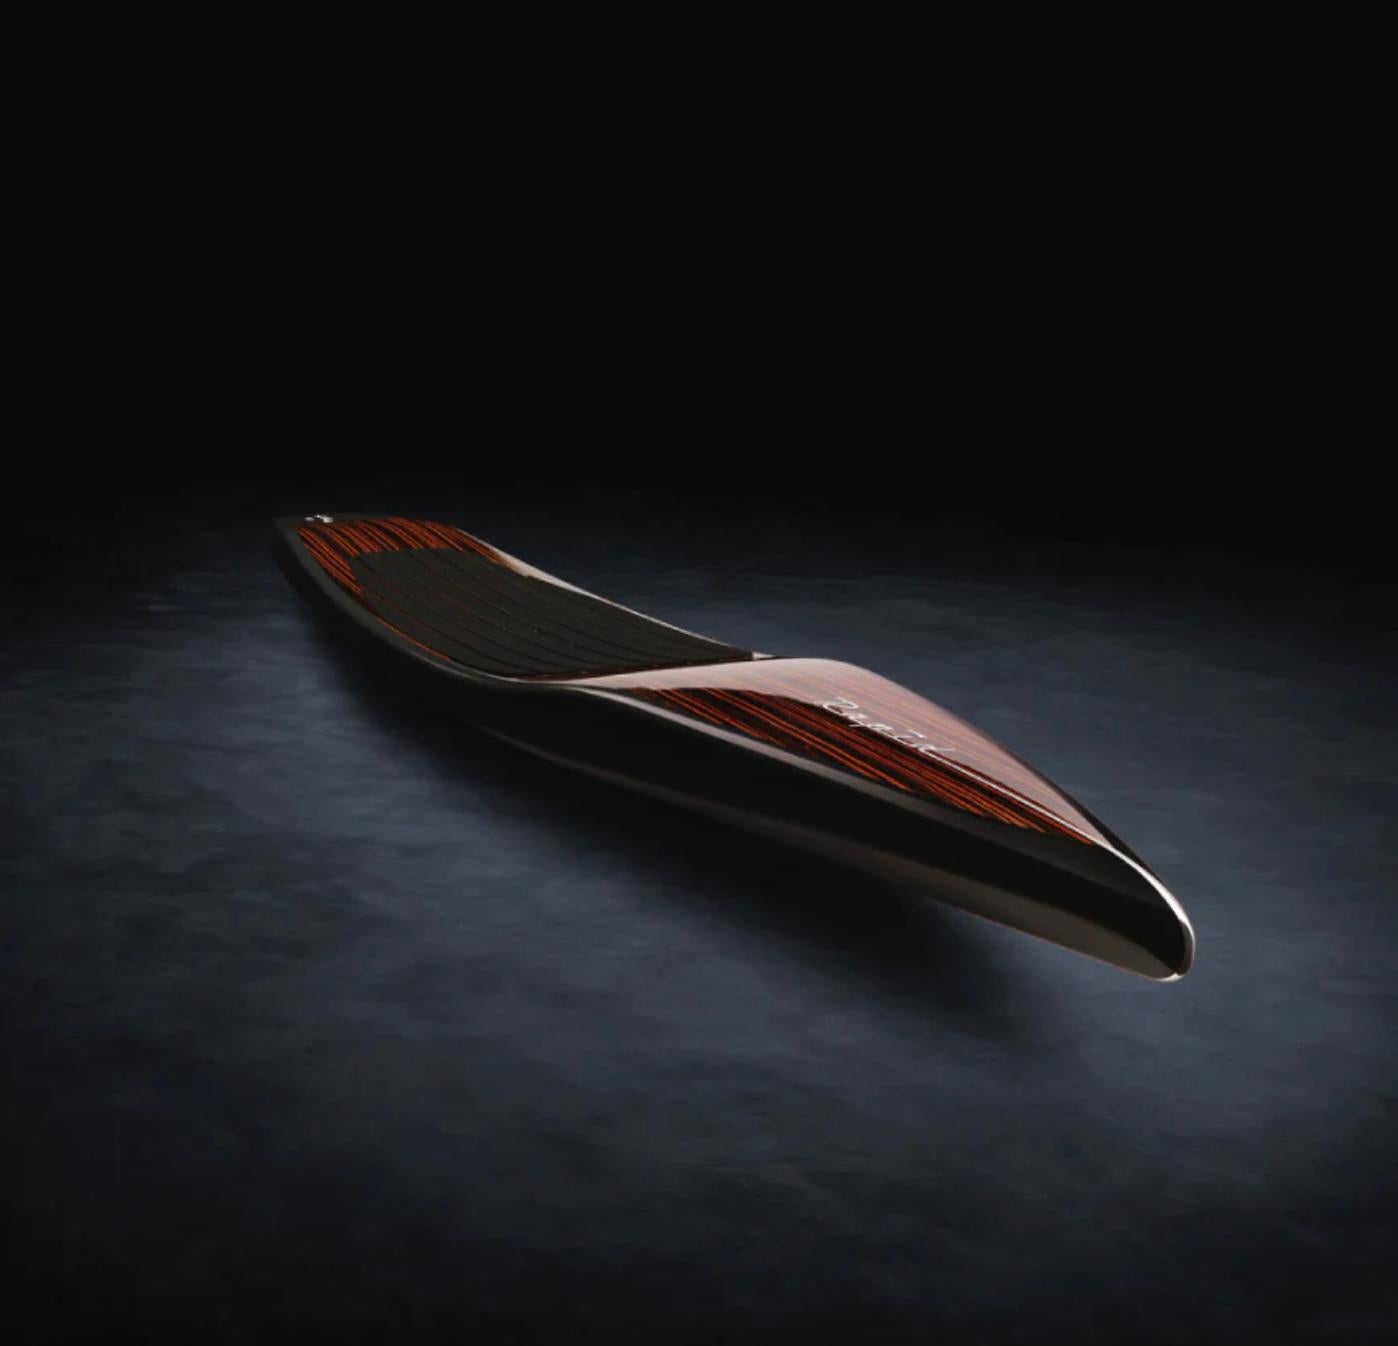 Les plus belles planches à pagaie du monde par Beau Lake. 

Conçue et fabriquée au Canada, la planche à pagaie Rapid est une planche à pagaie de type touring. Son corps long et étroit est entièrement construit en fibre de carbone pour créer une